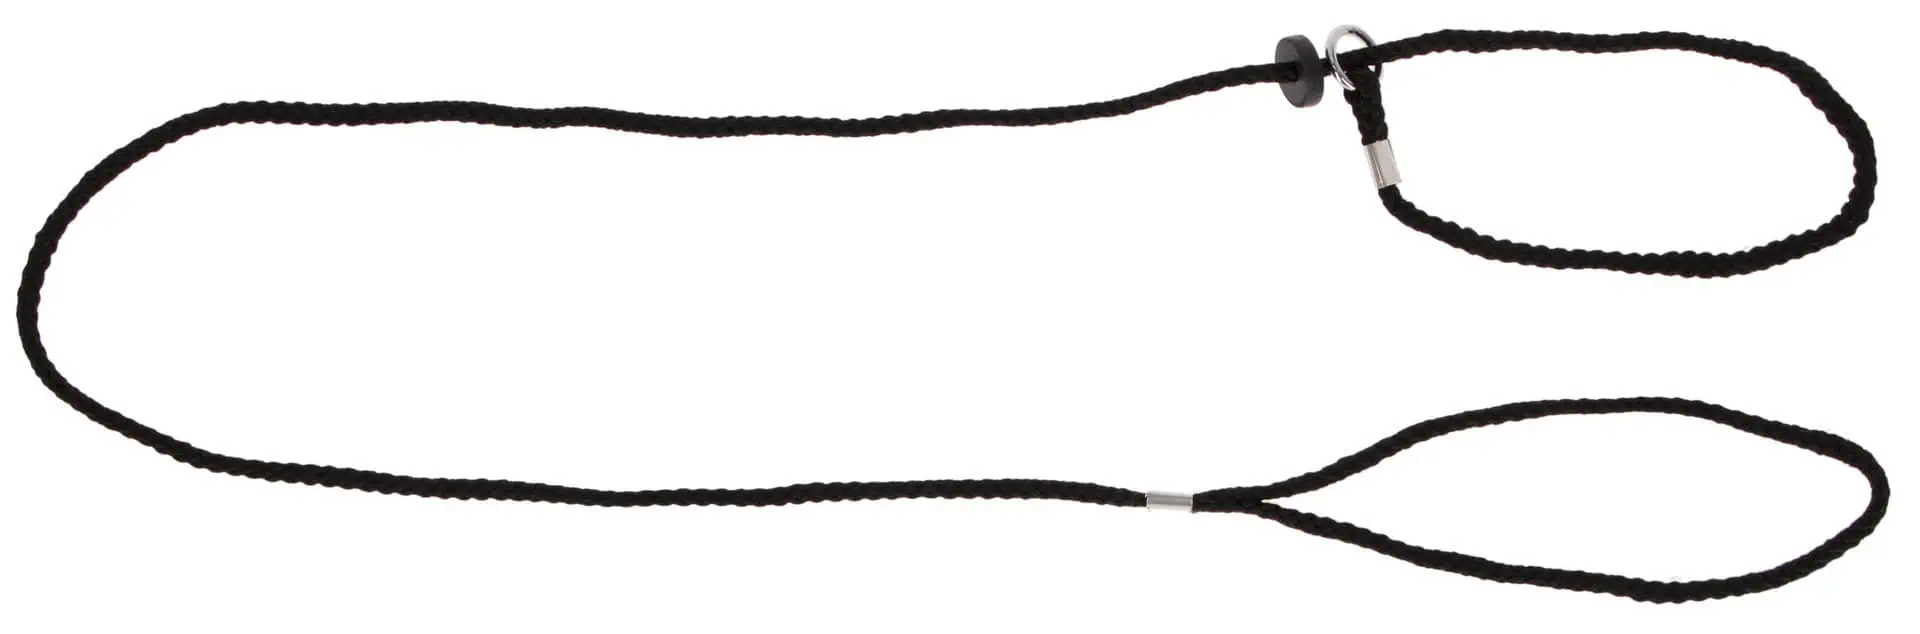 Demonstrationskoppel svart nylon med krage 6 mm x 125 cm